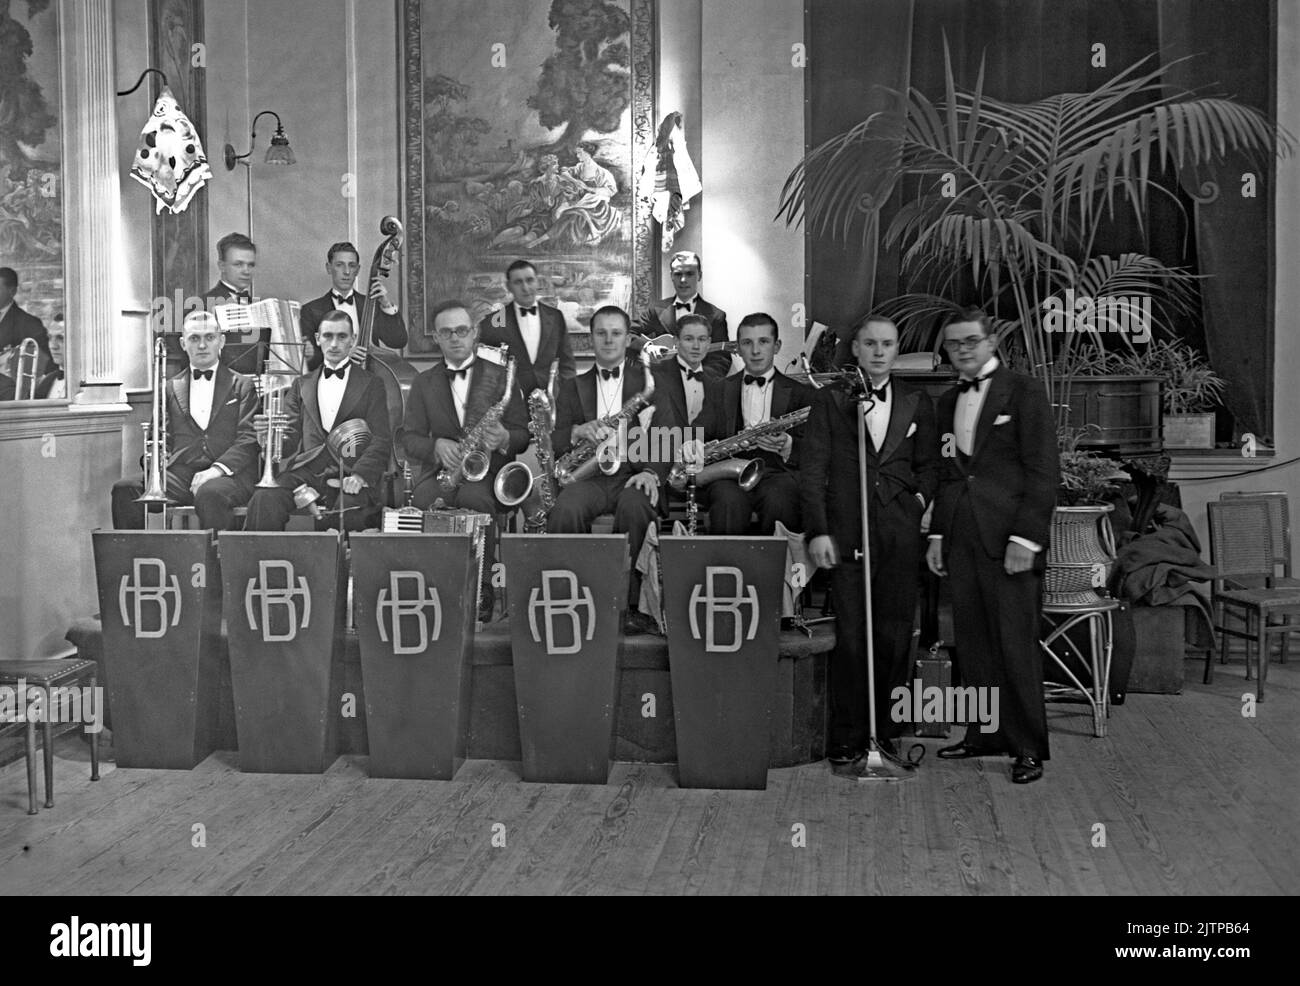 Una banda de danza británica, The Harry Blake Orchestra, en el Portman Rooms, Baker Street, Londres, Reino Unido, en noviembre de 1937. Con 12 miembros, esta era una banda considerable y, inusualmente por el tiempo, incluía un bajista y guitarrista. Blake es fotografiado a la derecha. Las primeras bandas de danza y swing tuvieron su apogeo en el Reino Unido durante los años 1920s–30s. Las bandas tocaban en los salones de baile y en los salones de baile del hotel. Tocaban música melódica y de buen tiempo y los jugadores individuales tocaban en varias bandas. Esta imagen es de un negativo de vidrio antiguo, una fotografía de la época 1930s. Foto de stock